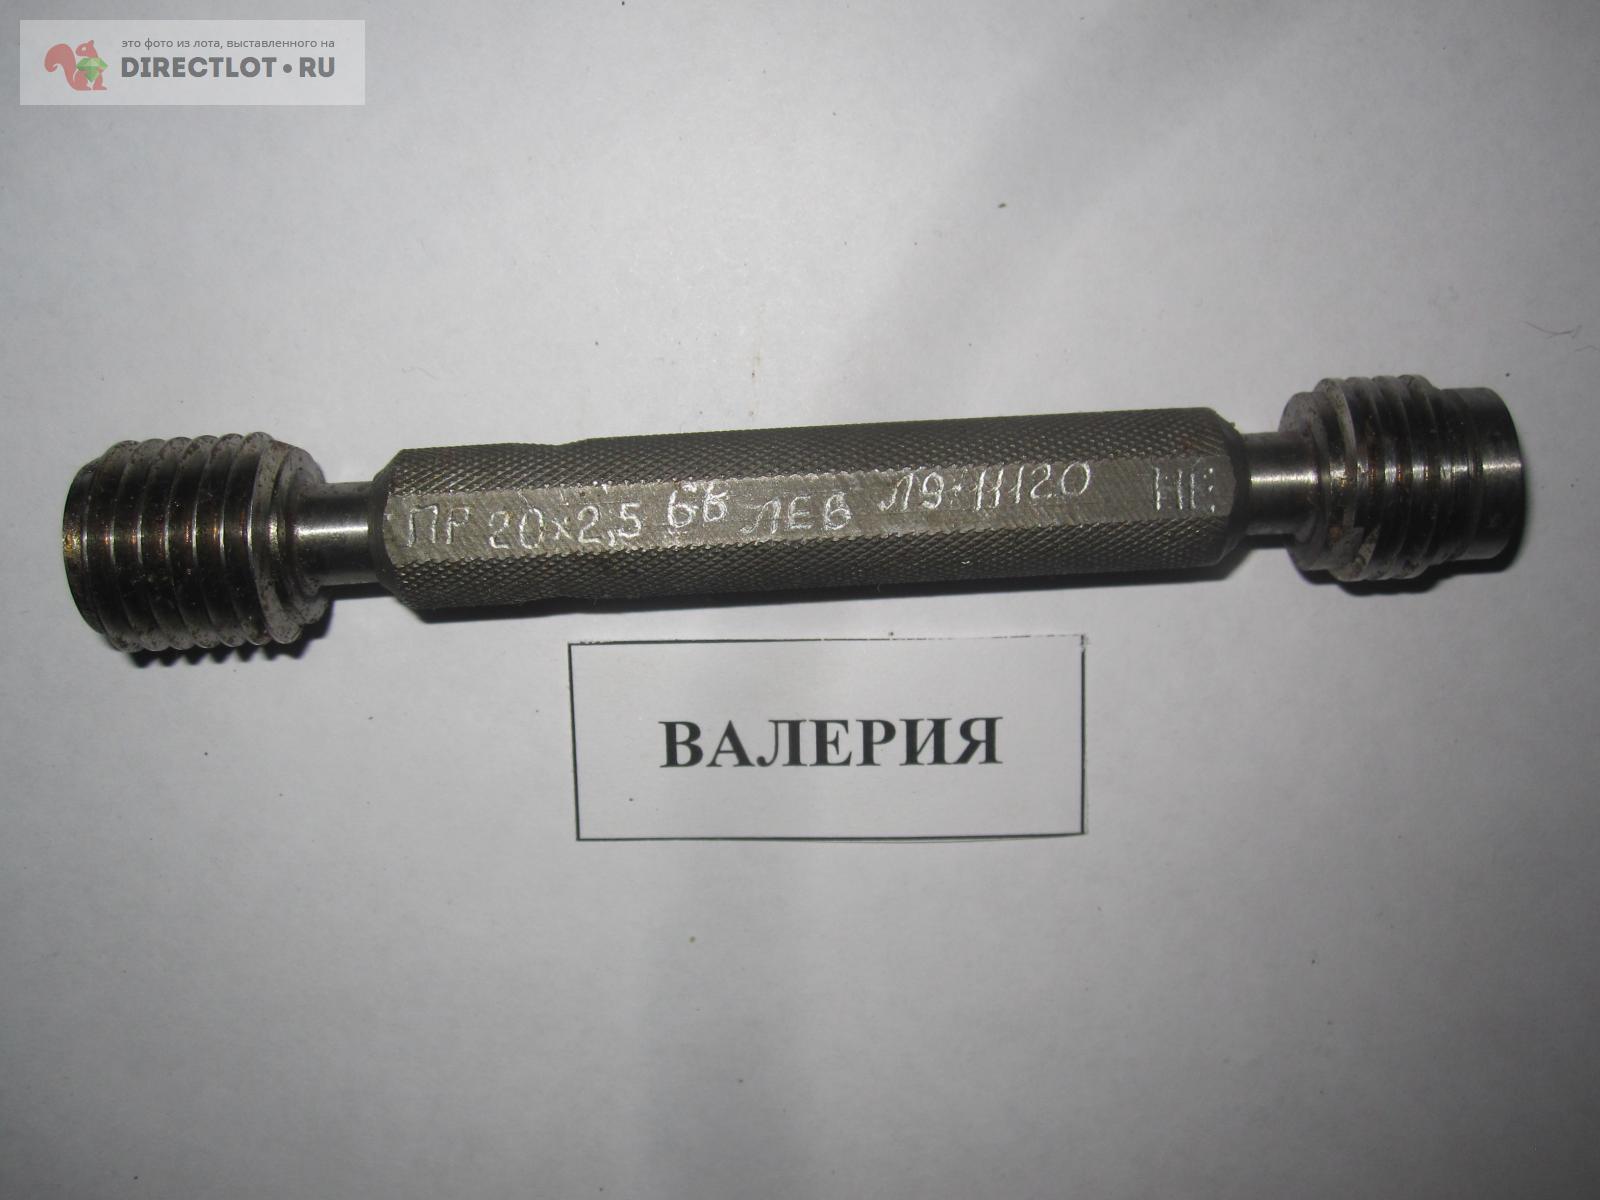 -пробка резьбовой 20х2,5 ПР/НЕ, см. описание  в Челябинске .